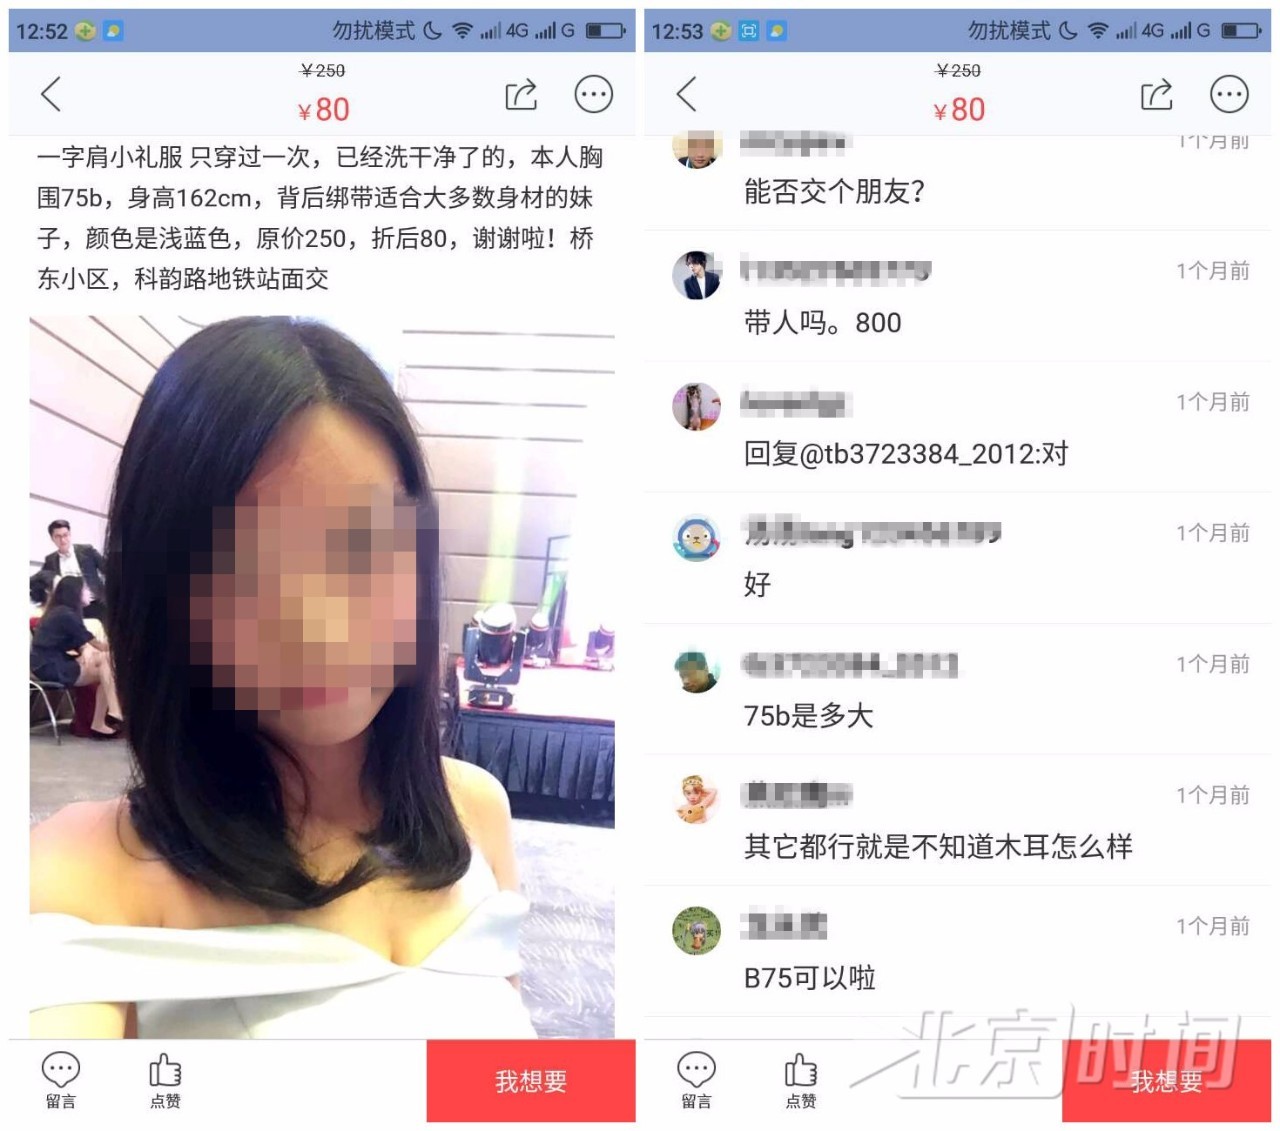 世态万象    北京时间"此刻"调查发现,淘宝二手交易平台闲鱼app上存在